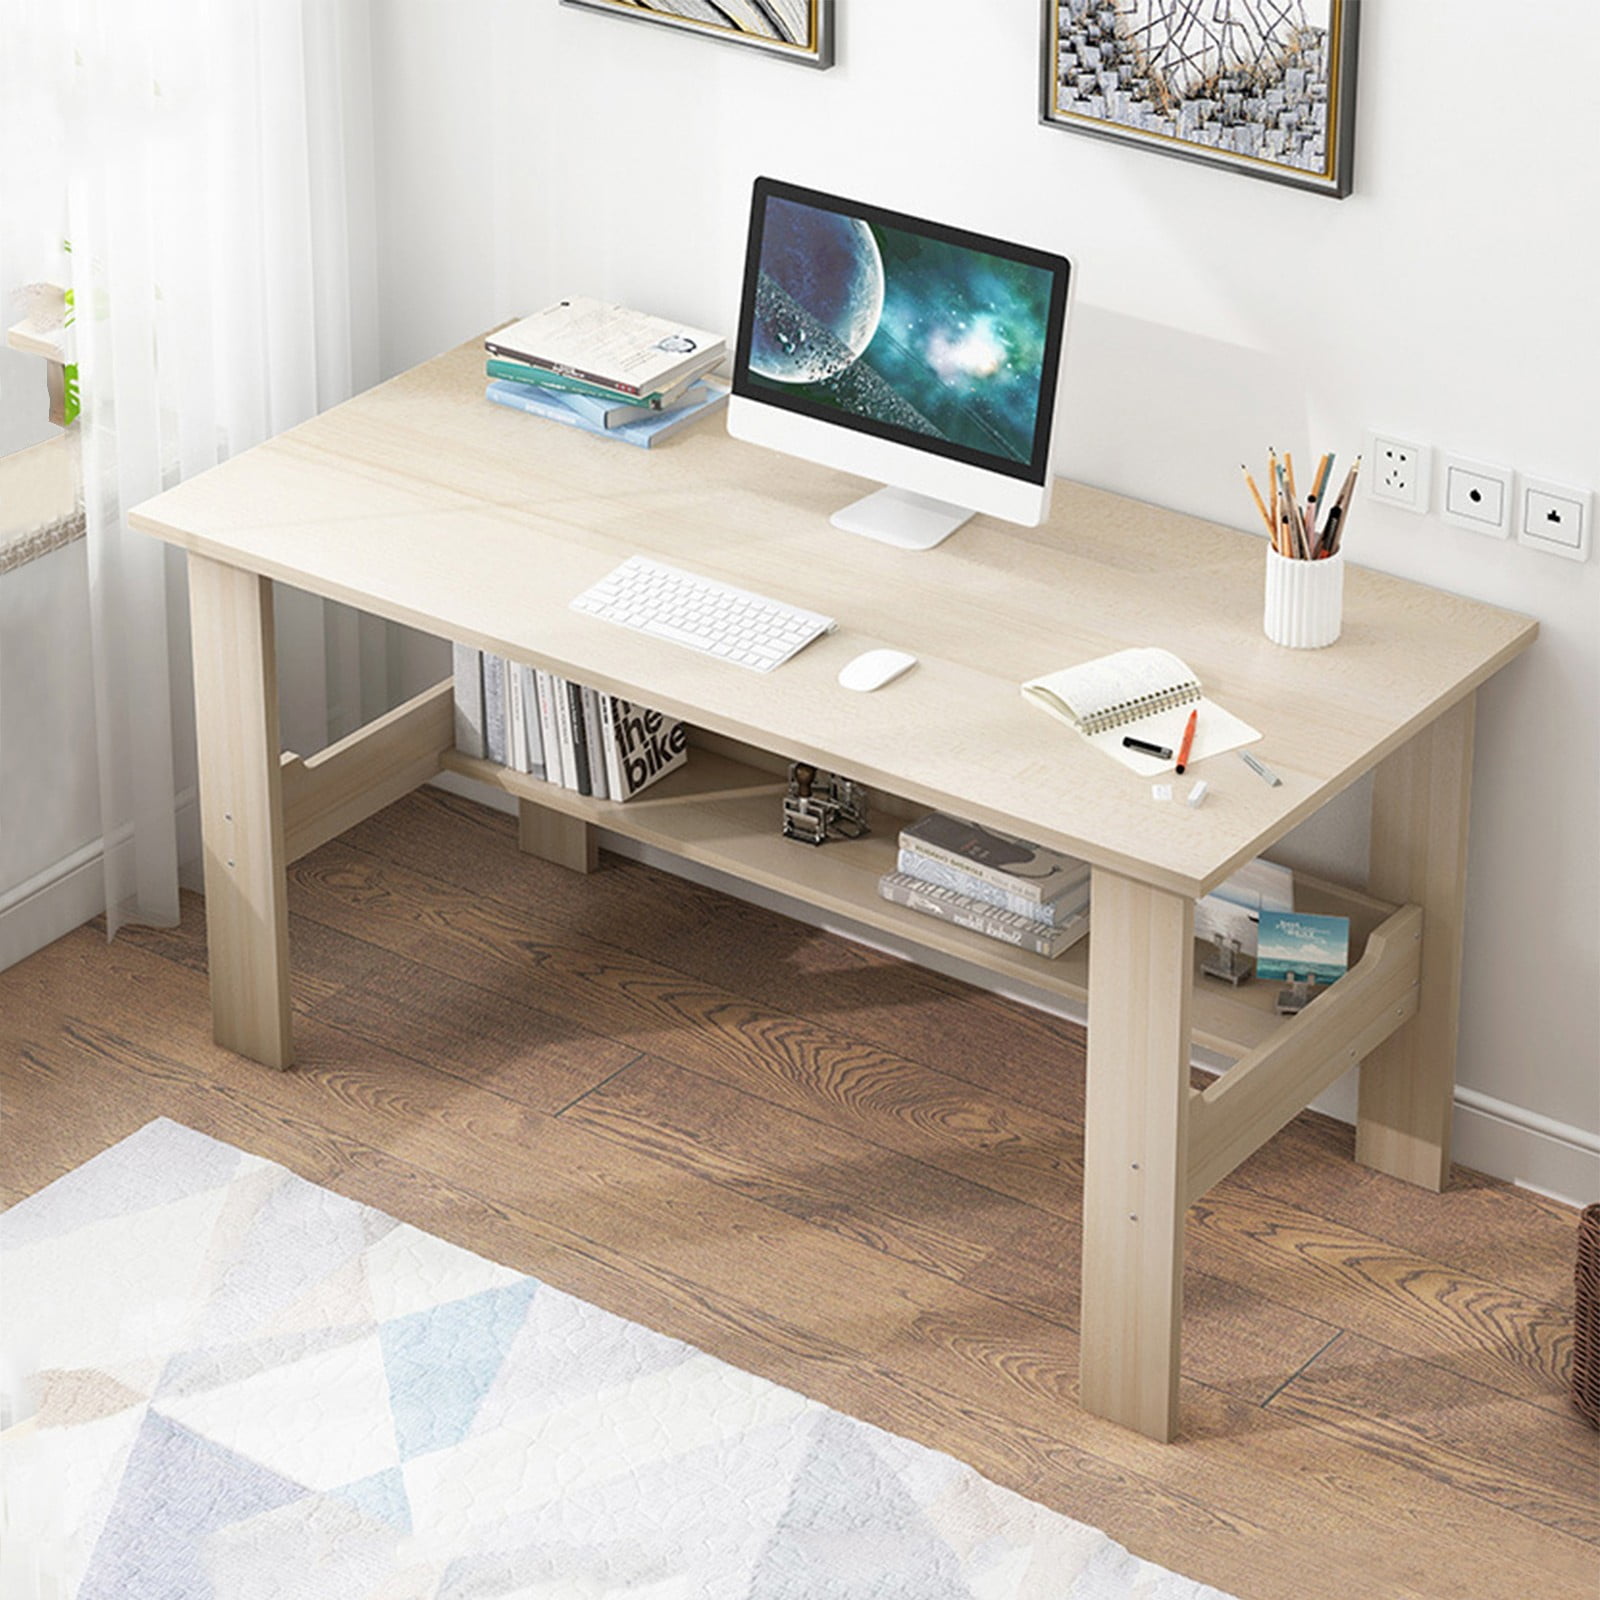 Details about   Home Desktop Computer Desk Bedroom Laptop Study Table Office Desk Workstation 